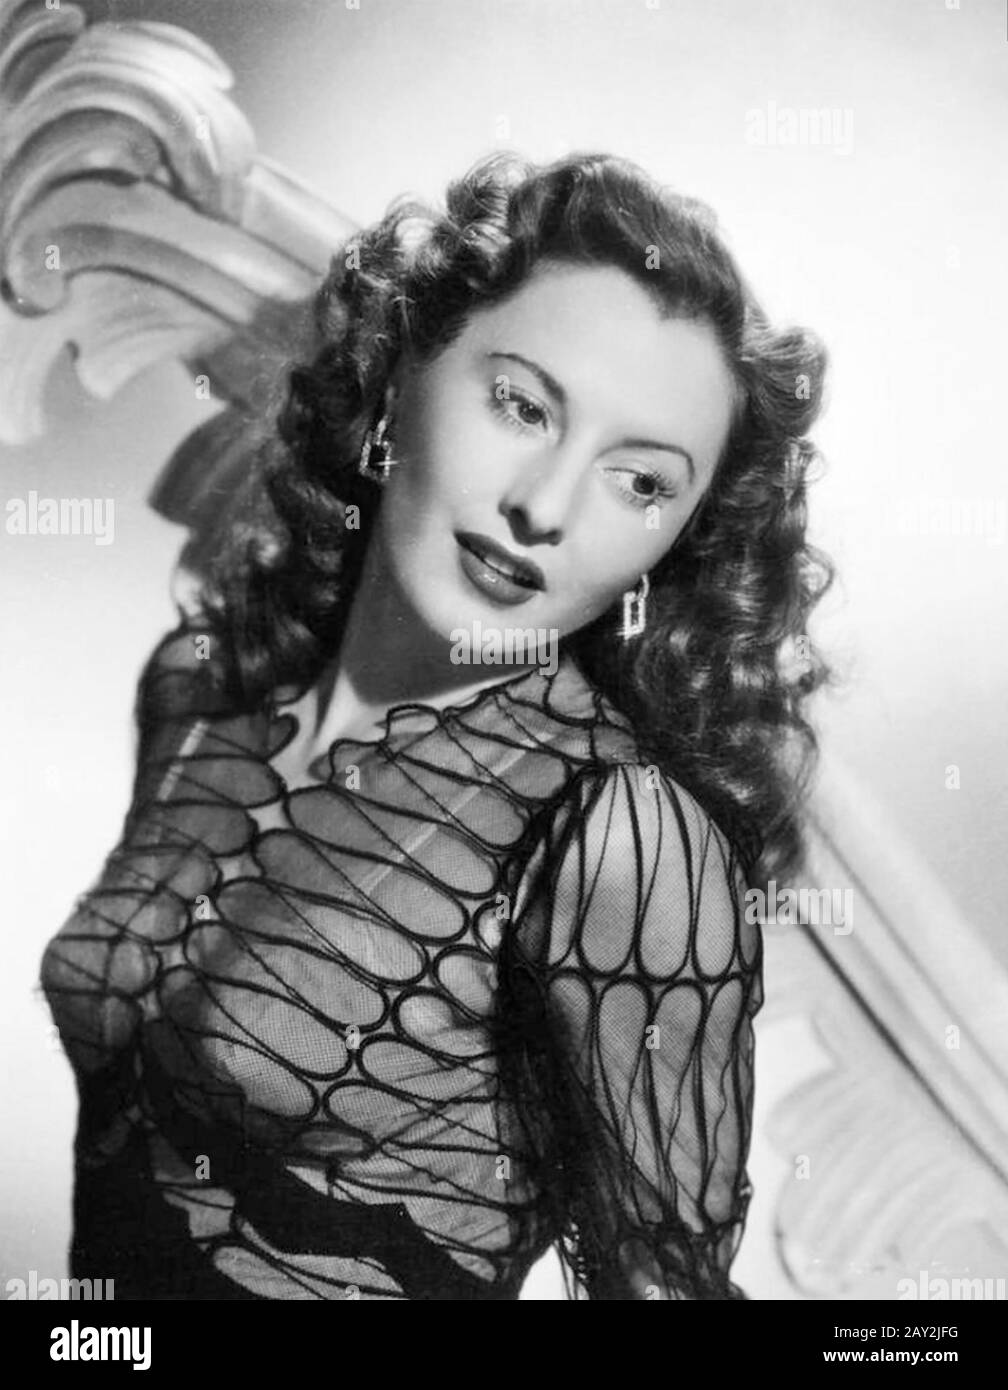 Barbara STANWYCK (1907-1990) actrice et danseuse de films américains vers 1940 Banque D'Images